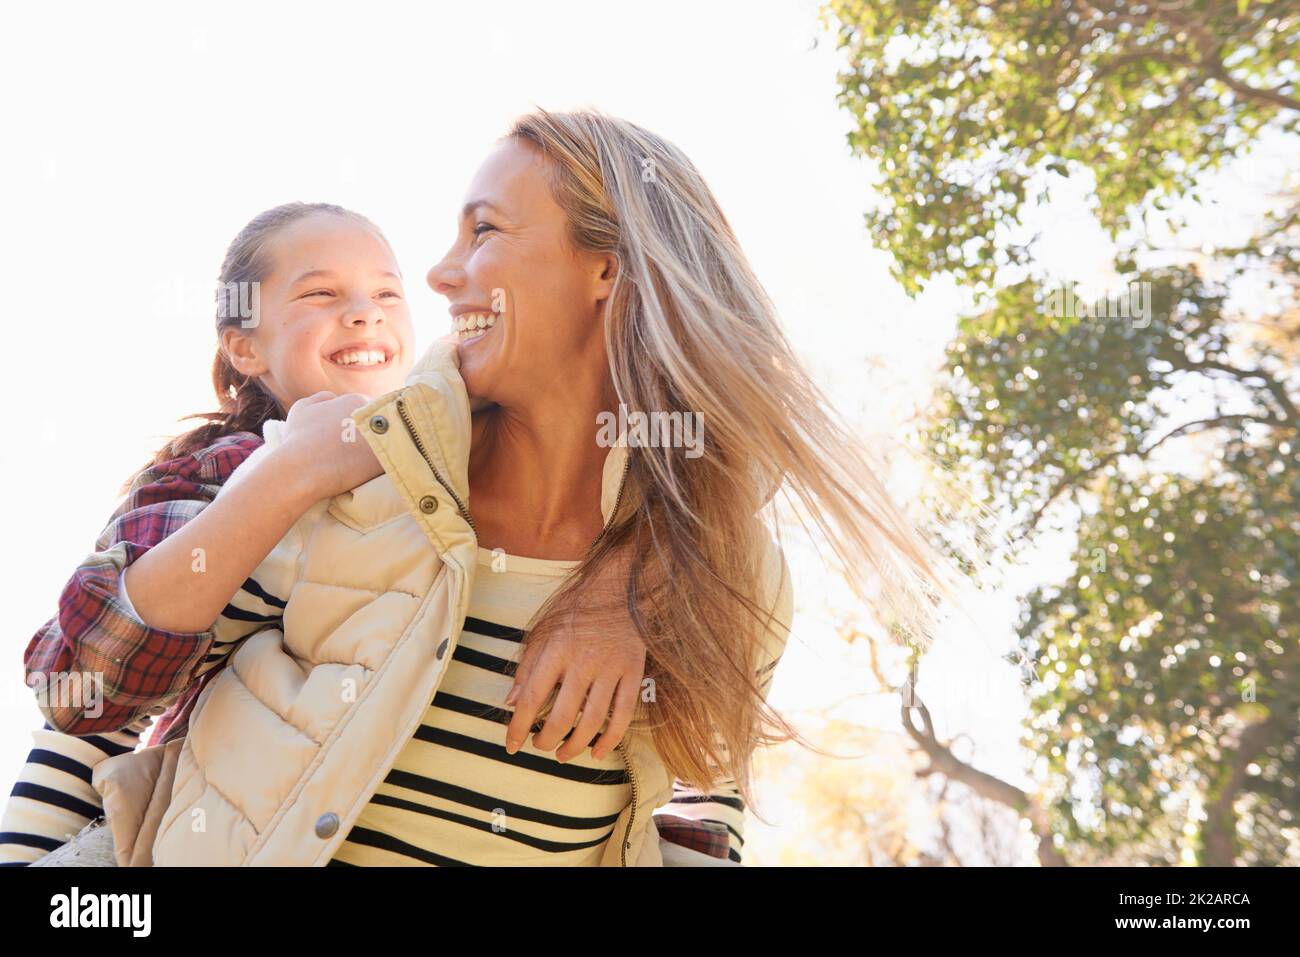 Spielerische Familienbindung. Eine glückliche Mutter und Tochter verbringen Zeit zusammen im Freien. Stockfoto